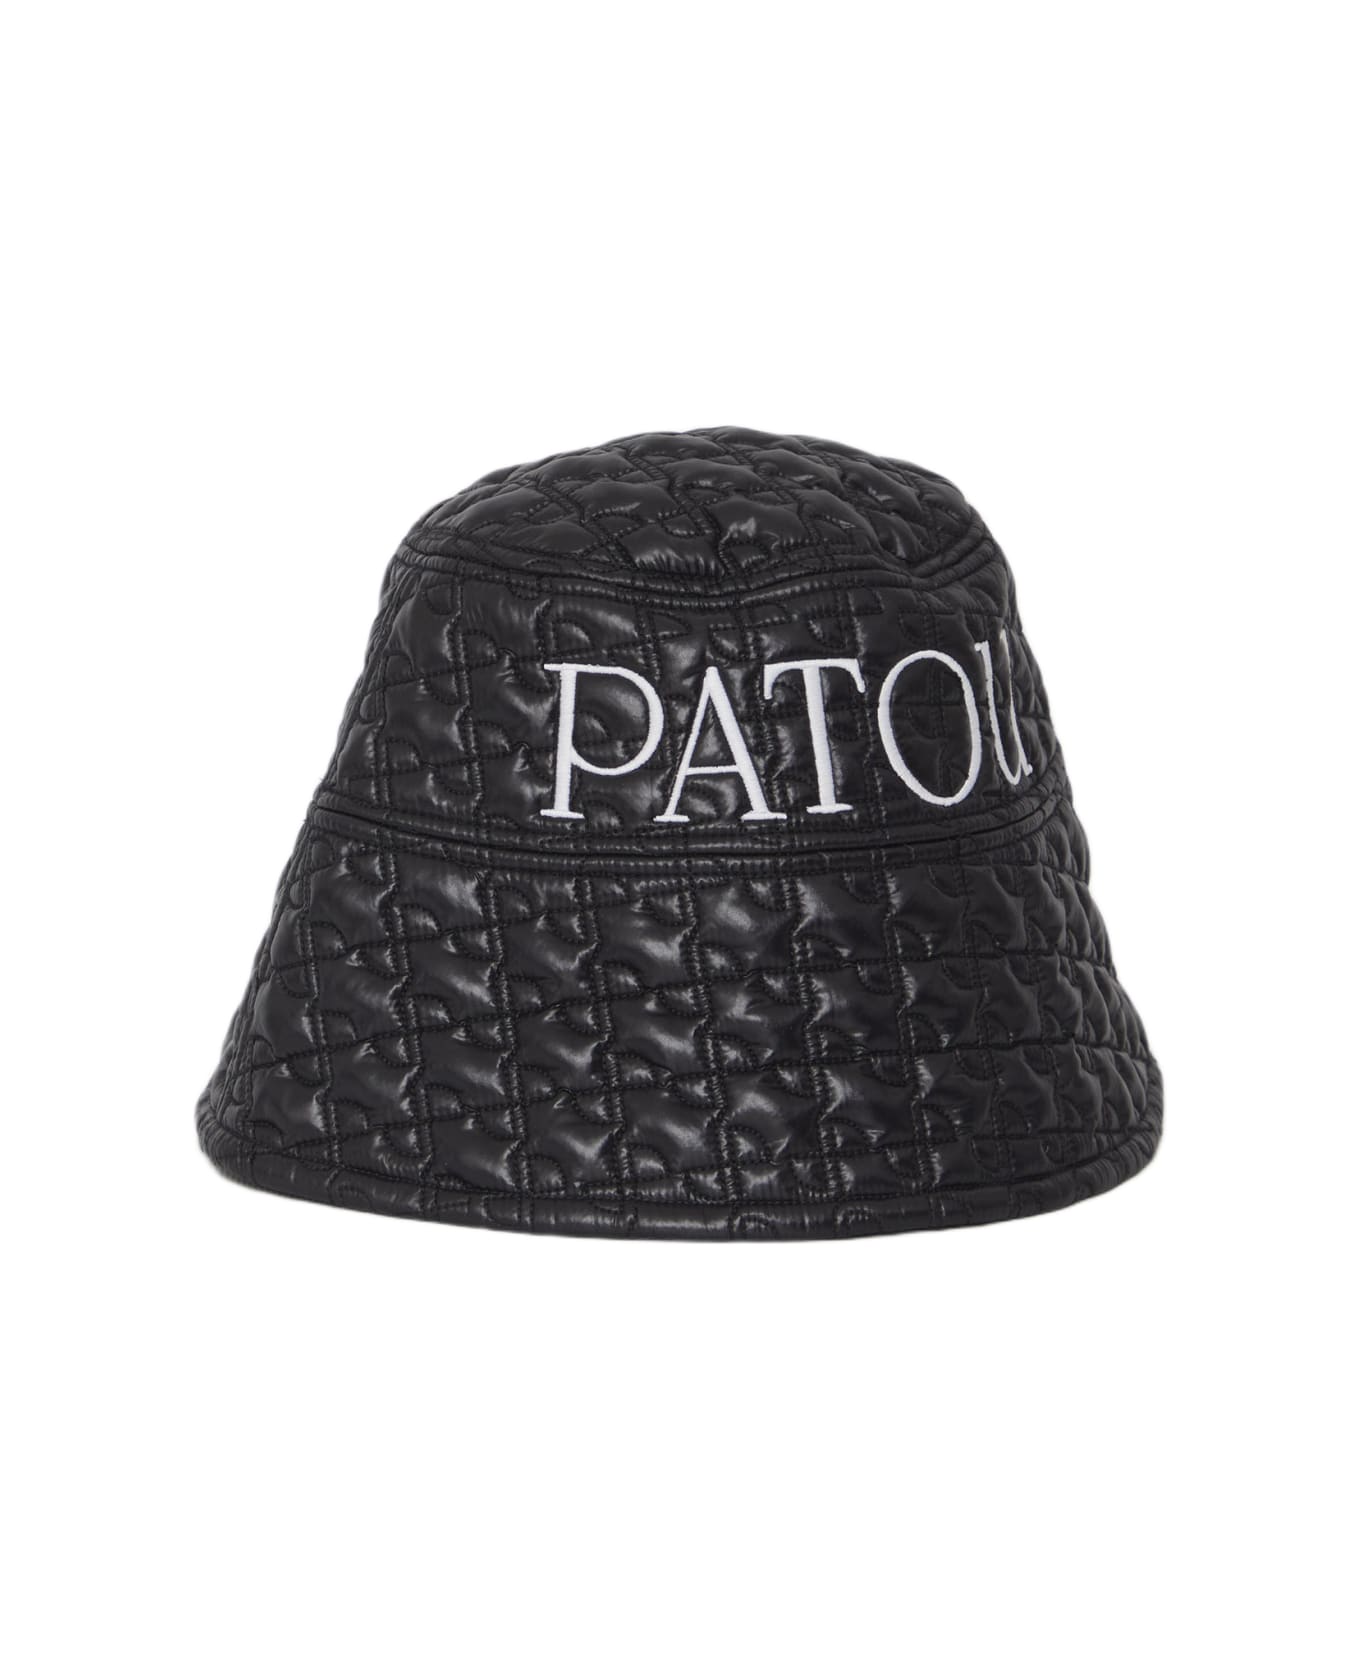 Patou Bucket Hat - BLACK 帽子